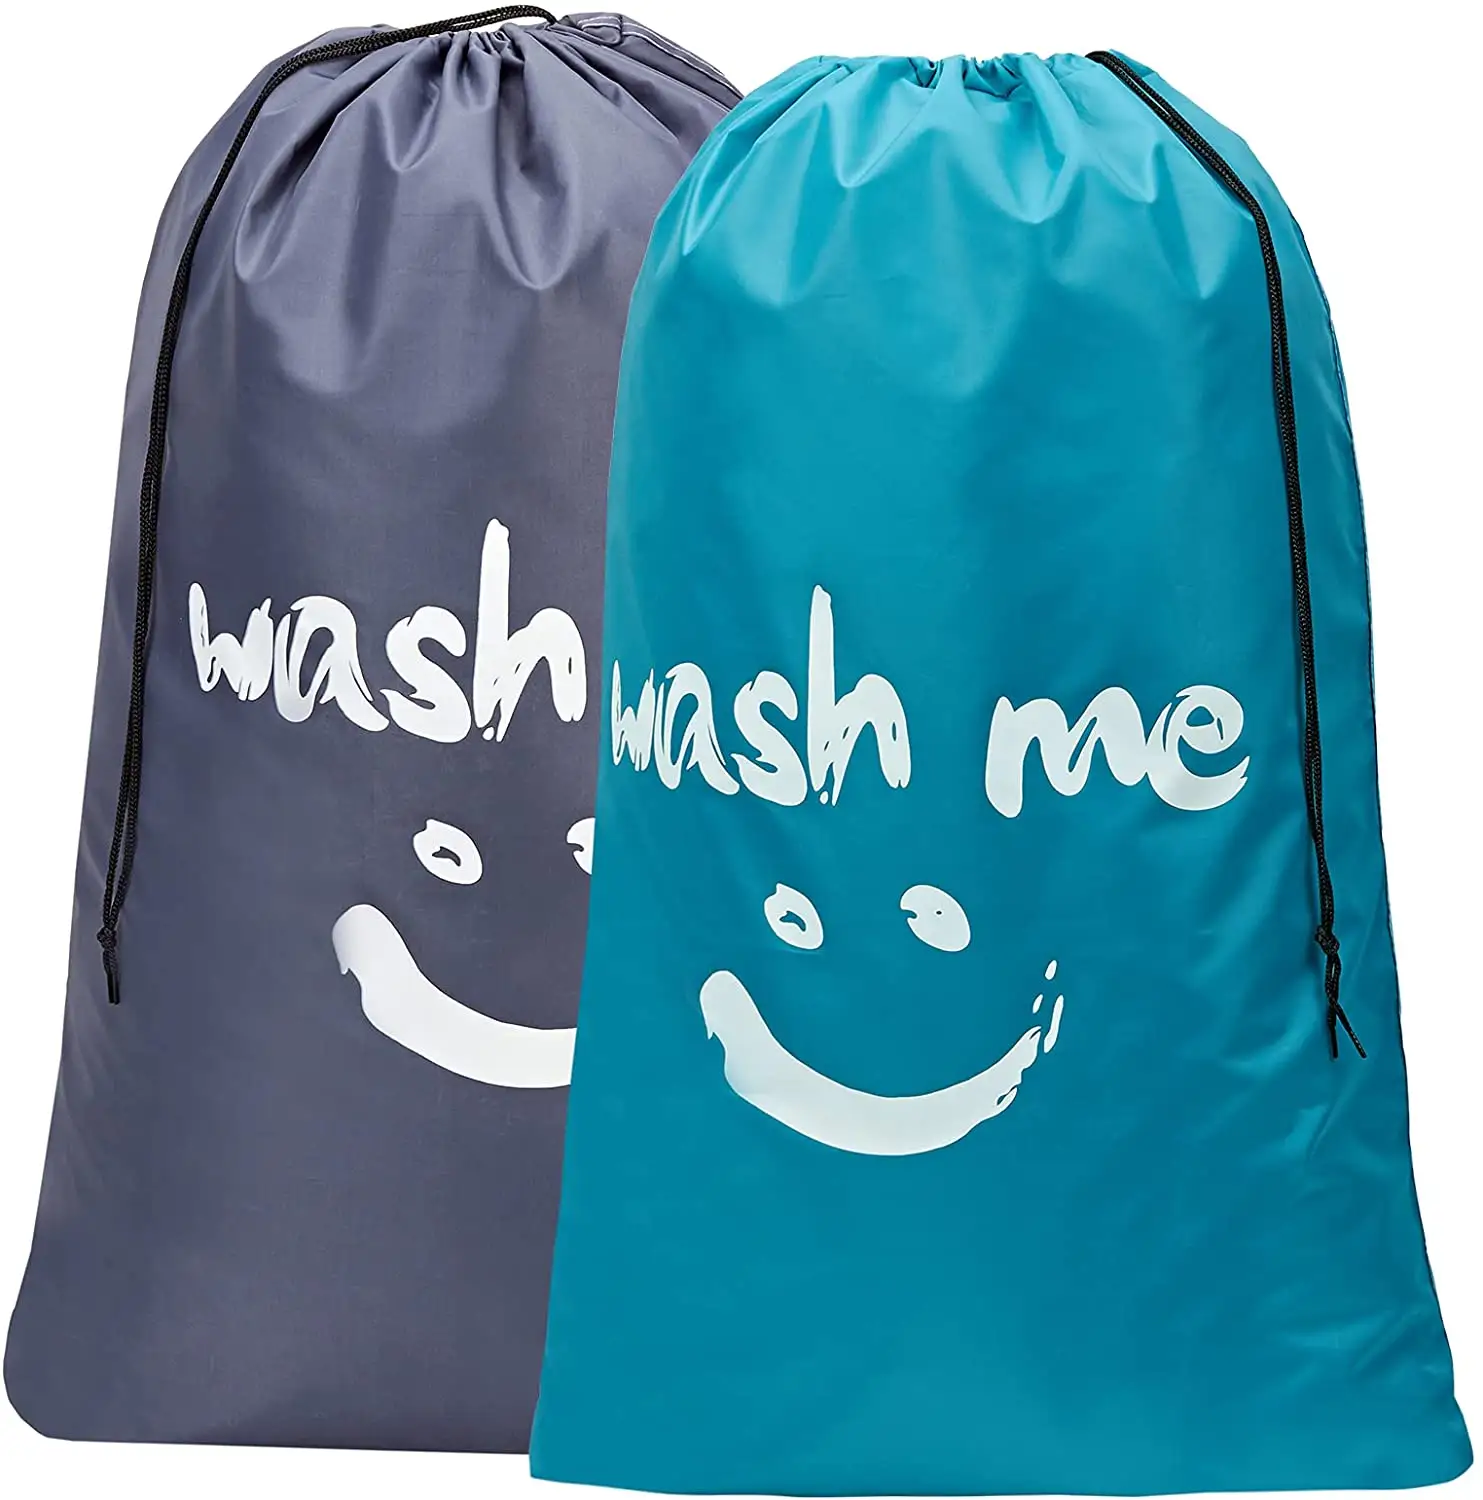 Reise wäsche sack, maschinen wasch bare Organizer-Taschen für schmutzige Kleidung, groß genug, um 4 Wäsche ladungen zu halten